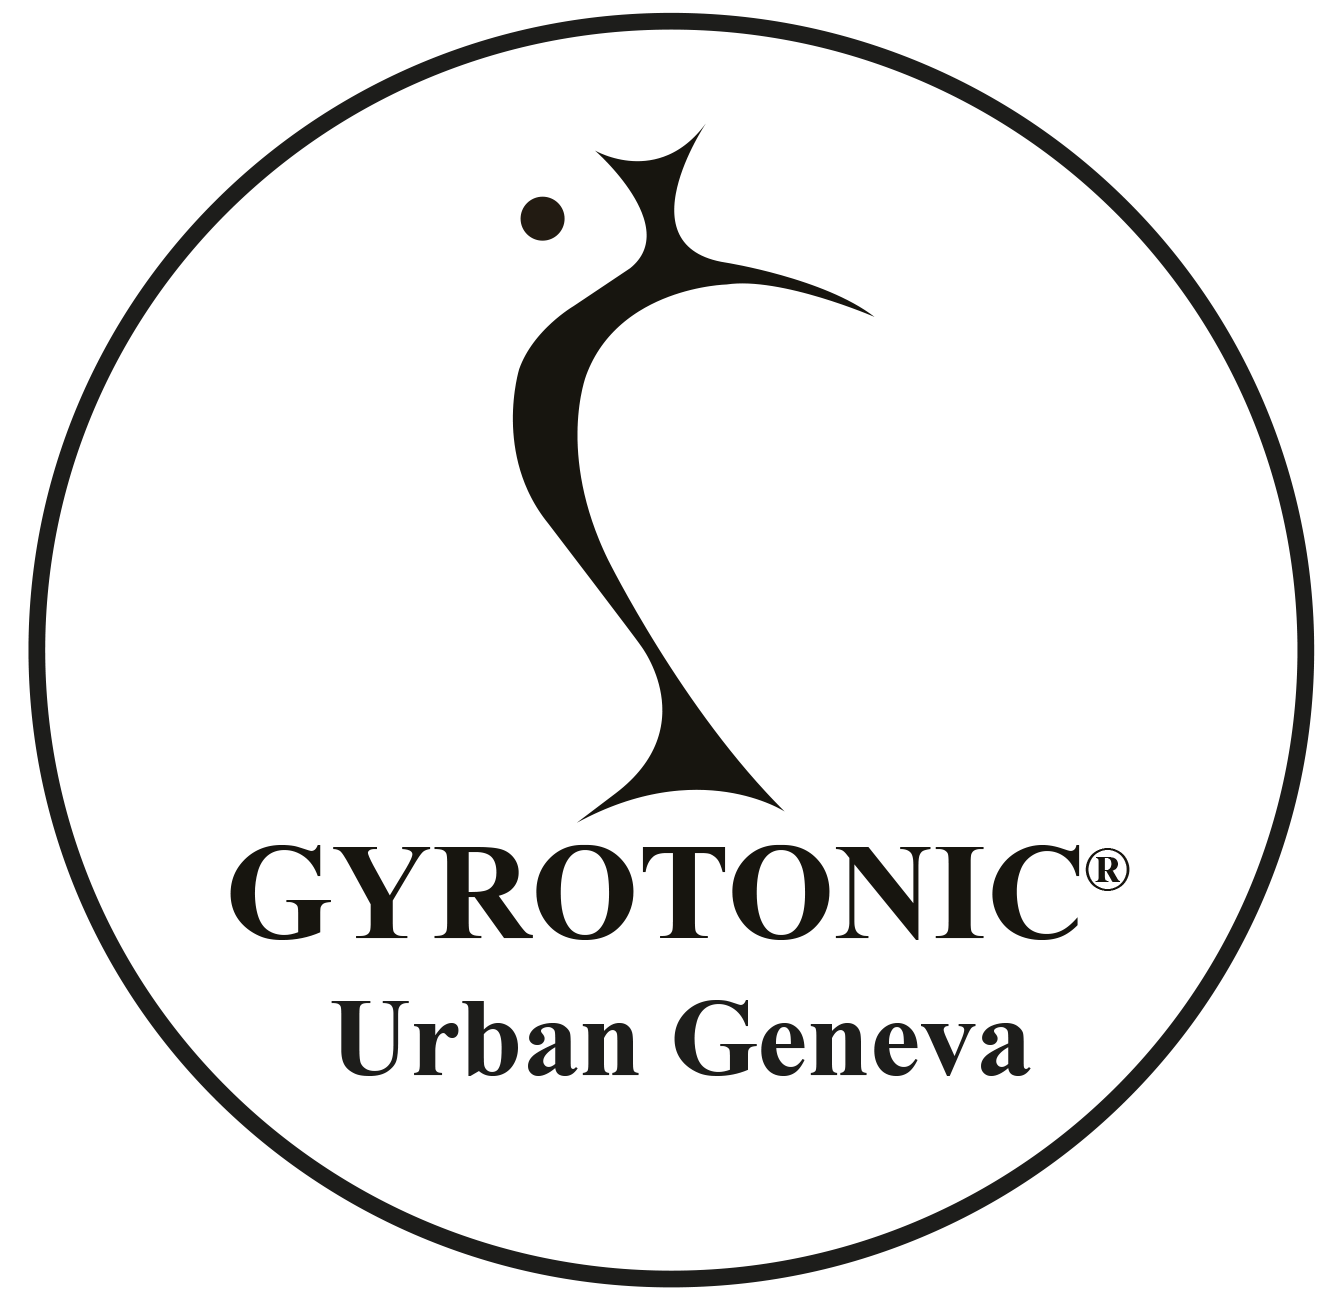 GYROTONIC(R) Urban Geneva